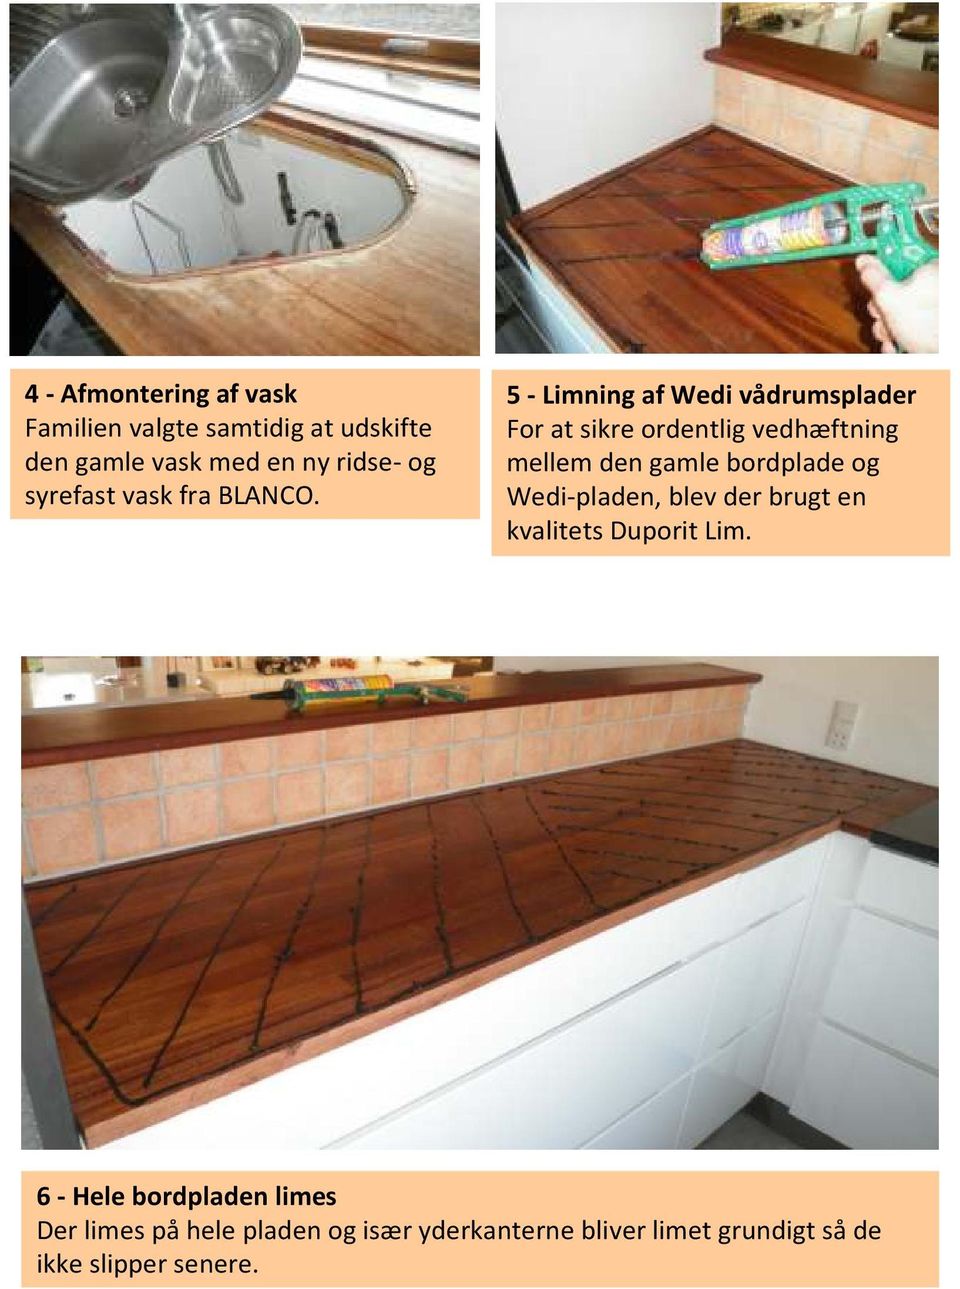 5 - Limning af Wedi vådrumsplader For at sikre ordentlig vedhæftning mellem den gamle bordplade og